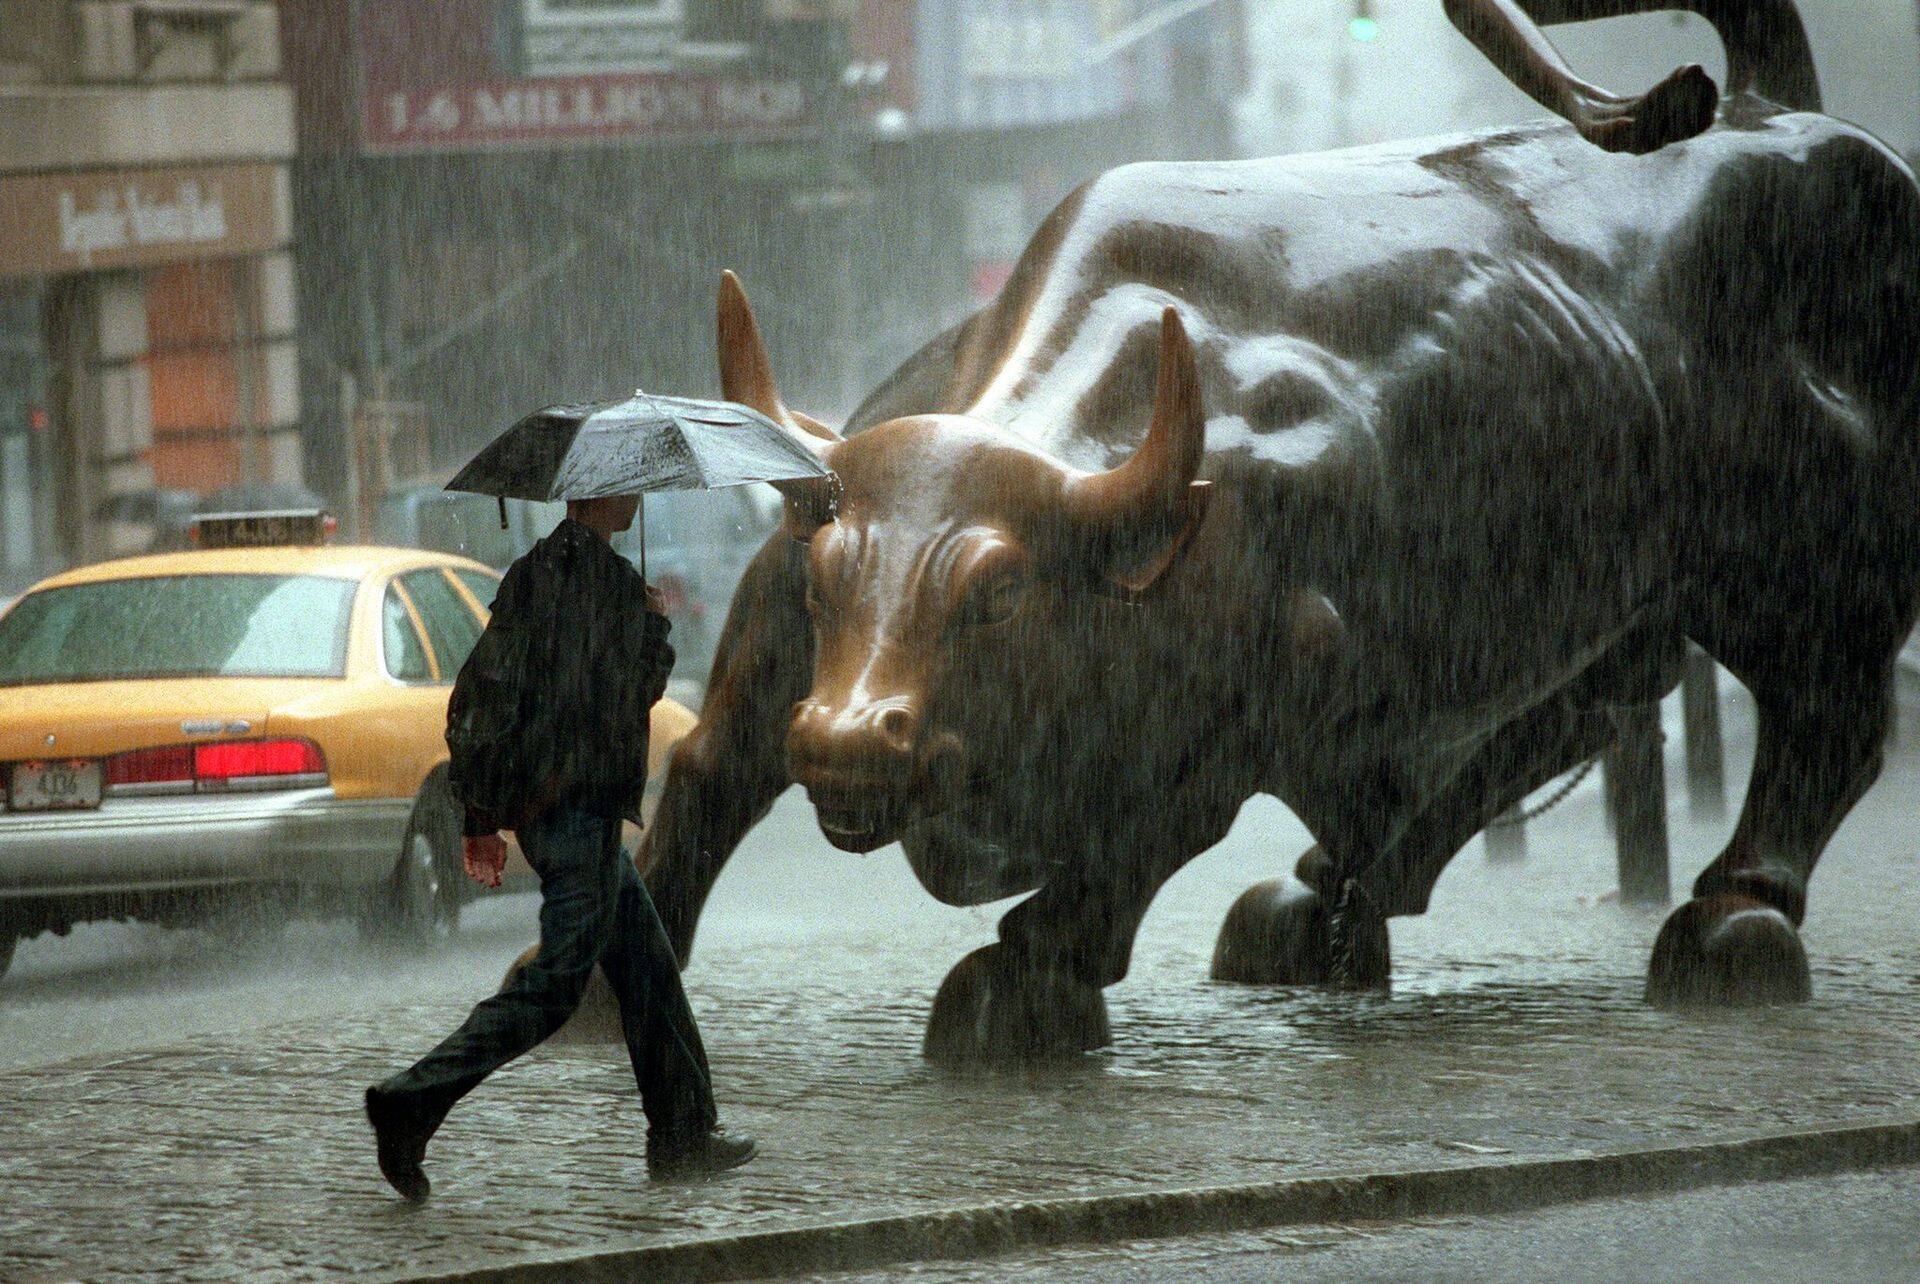 Hiinast kaela sadanud halvad uudised Wall Streeti optimismi ei kõigutanud.